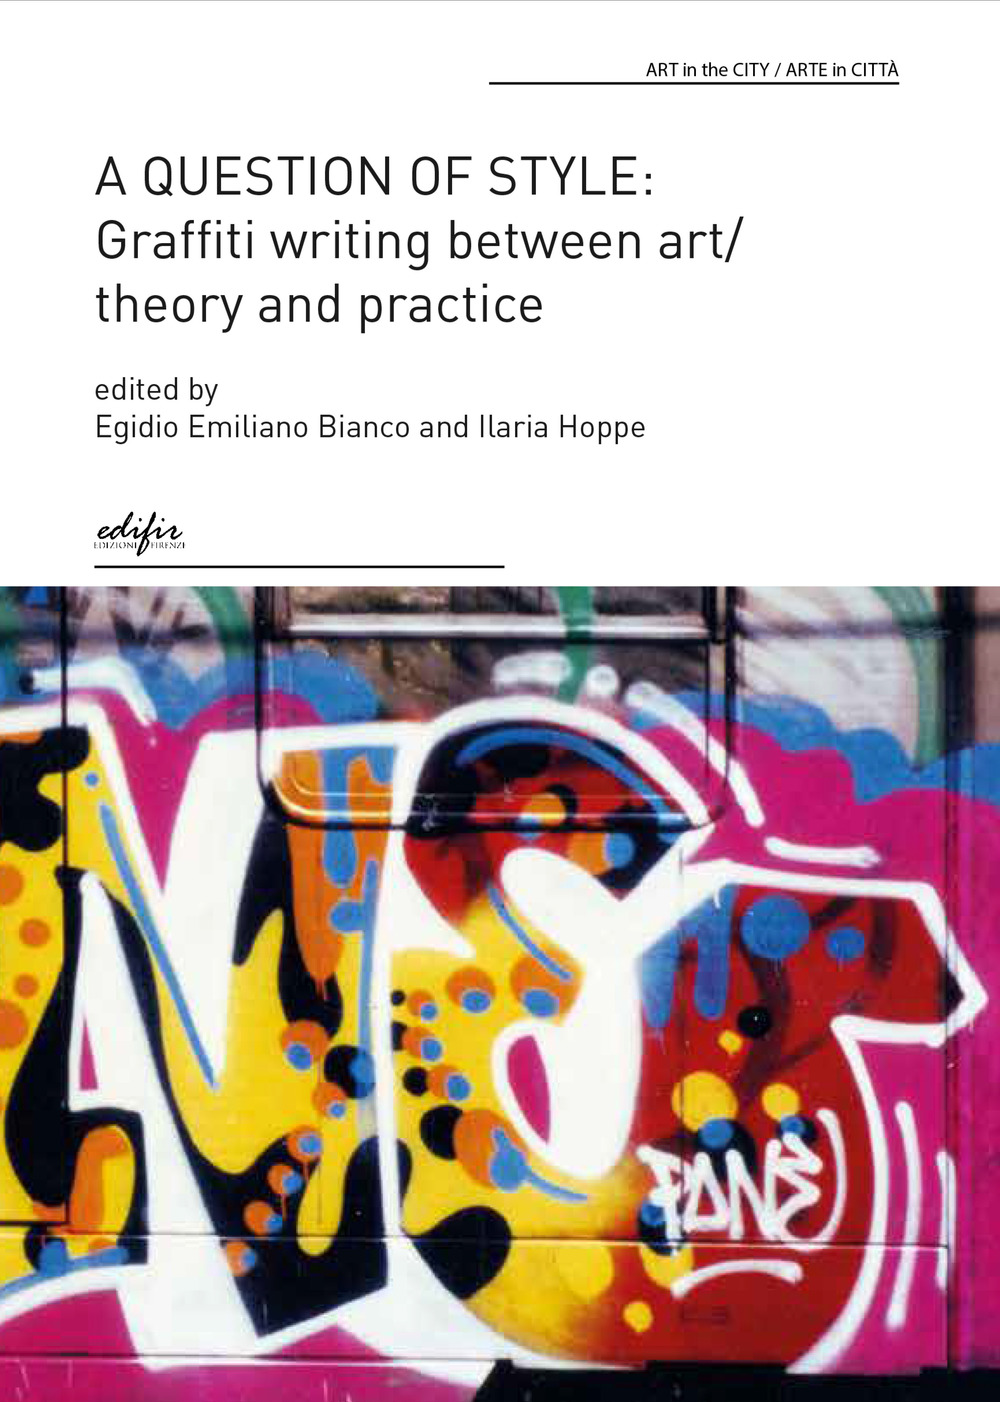 Libri Question Of Style: Graffiti Writing Between Art/Theory And Practice (A) NUOVO SIGILLATO, EDIZIONE DEL 03/03/2023 SUBITO DISPONIBILE